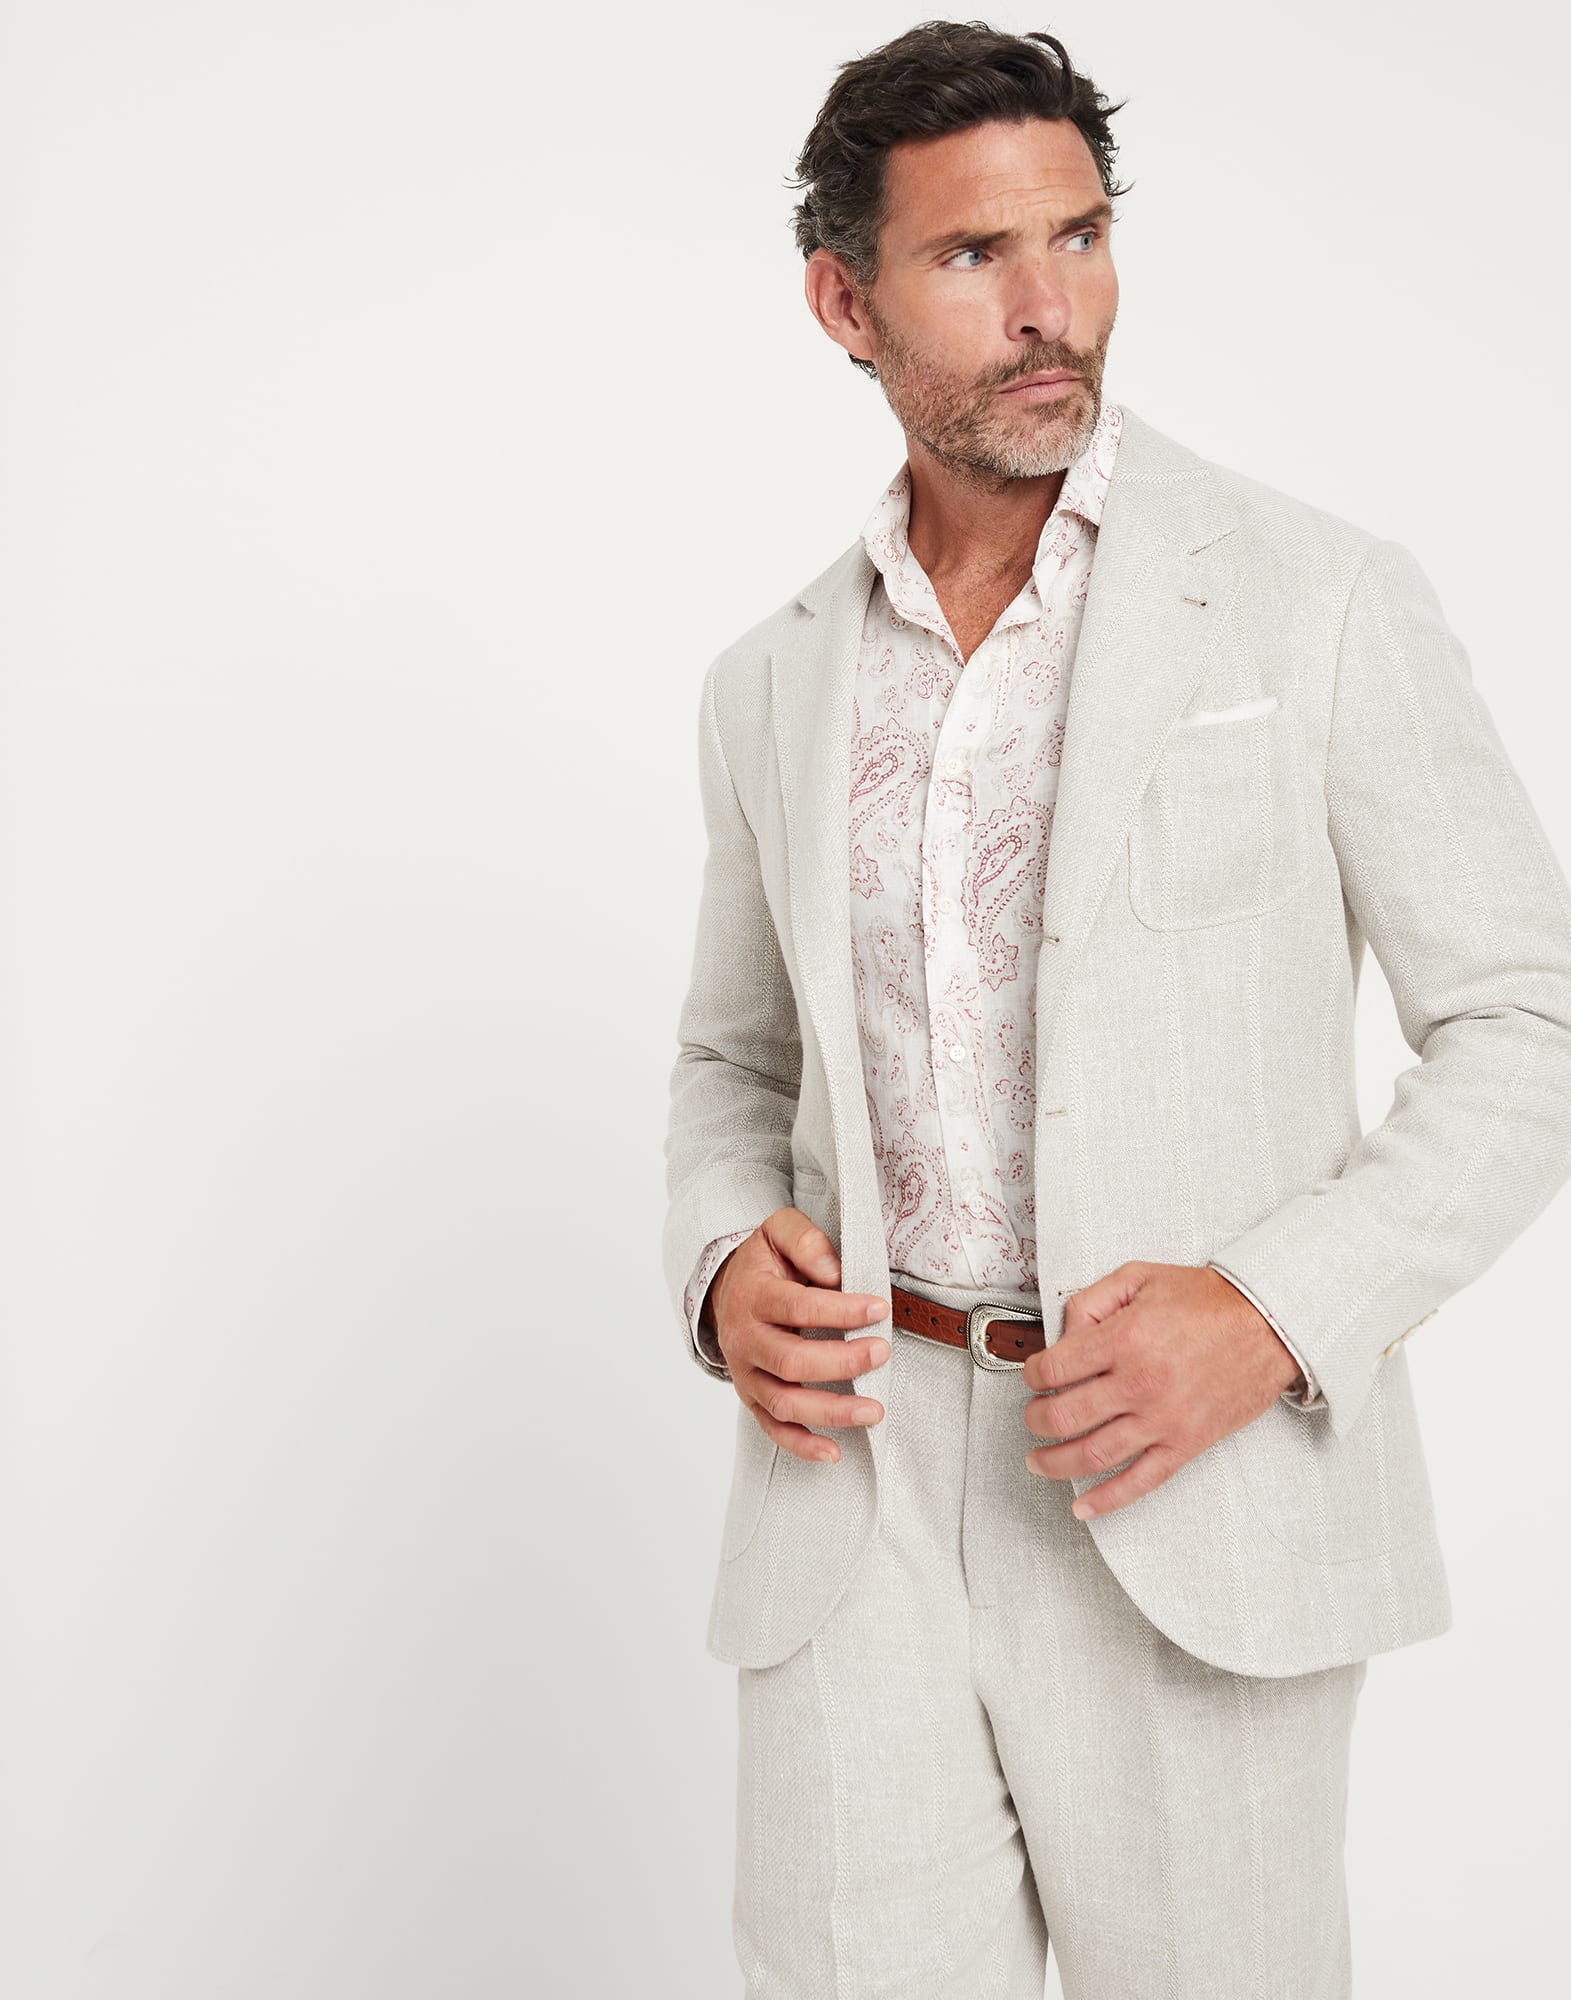 Бесподкладочный пиджак в меловую полоску Серовато-Белый Мужчина - Brunello Cucinelli